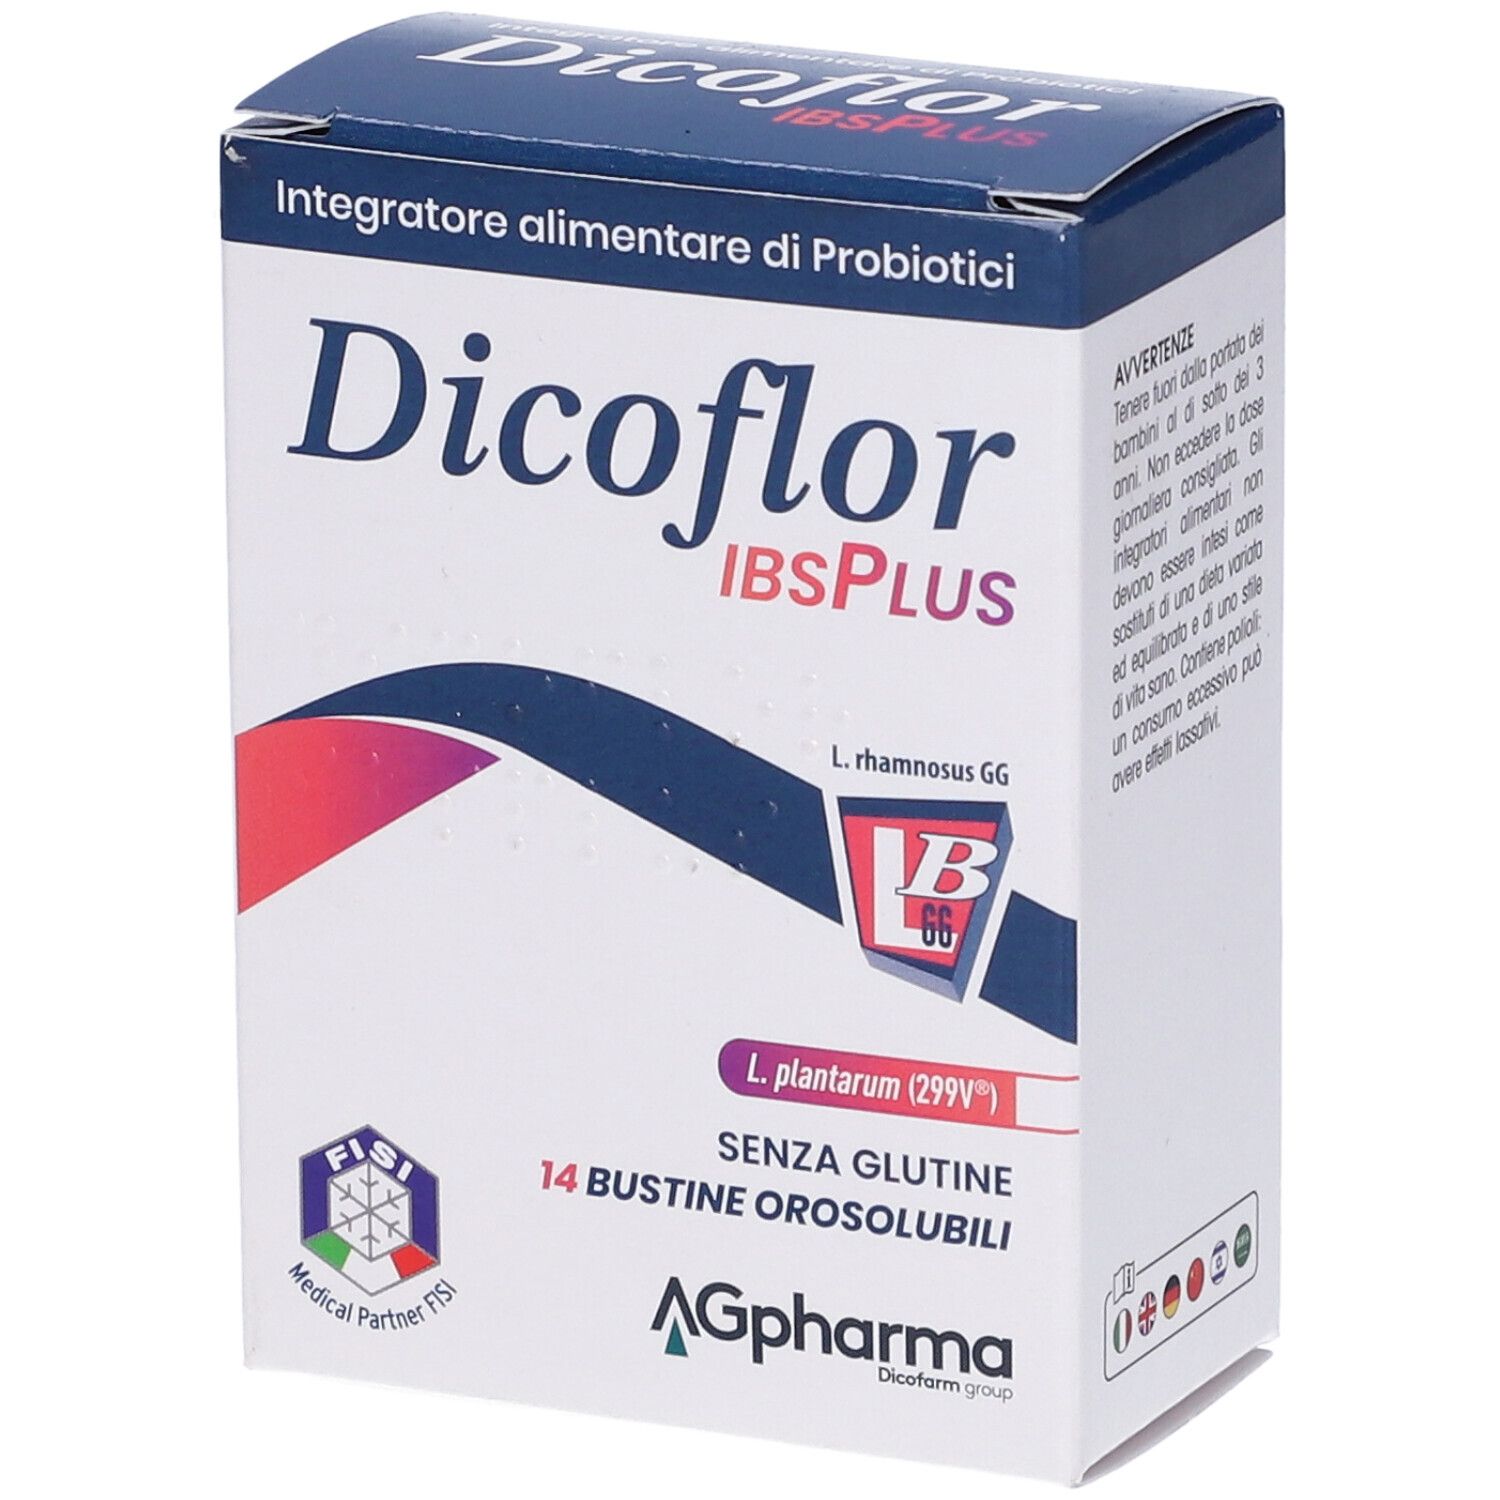 Dicoflor Ibsplus